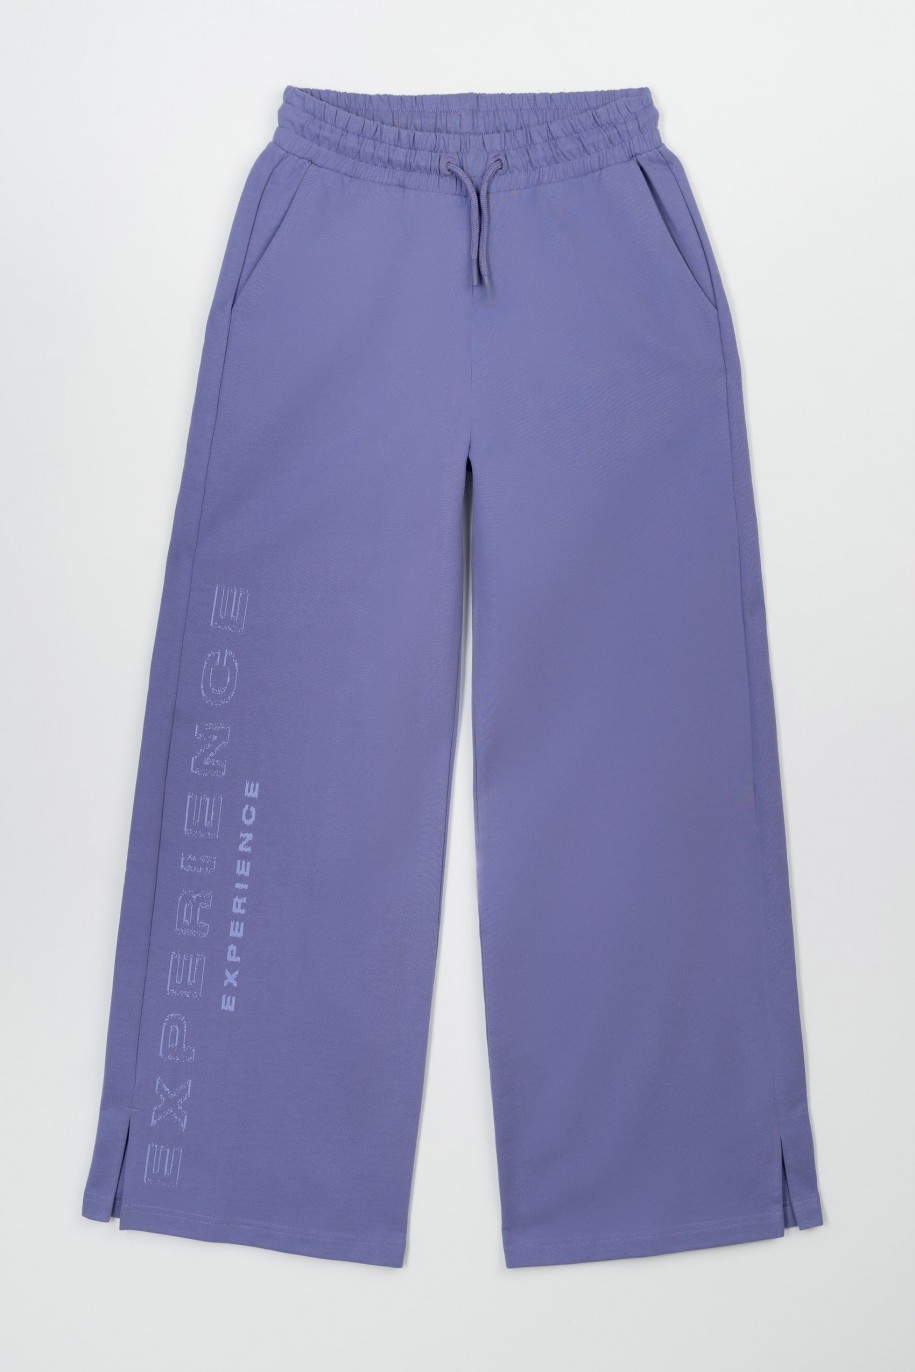 Fioletowe spodnie dresowe z nogawkami typu wide leg - 47340